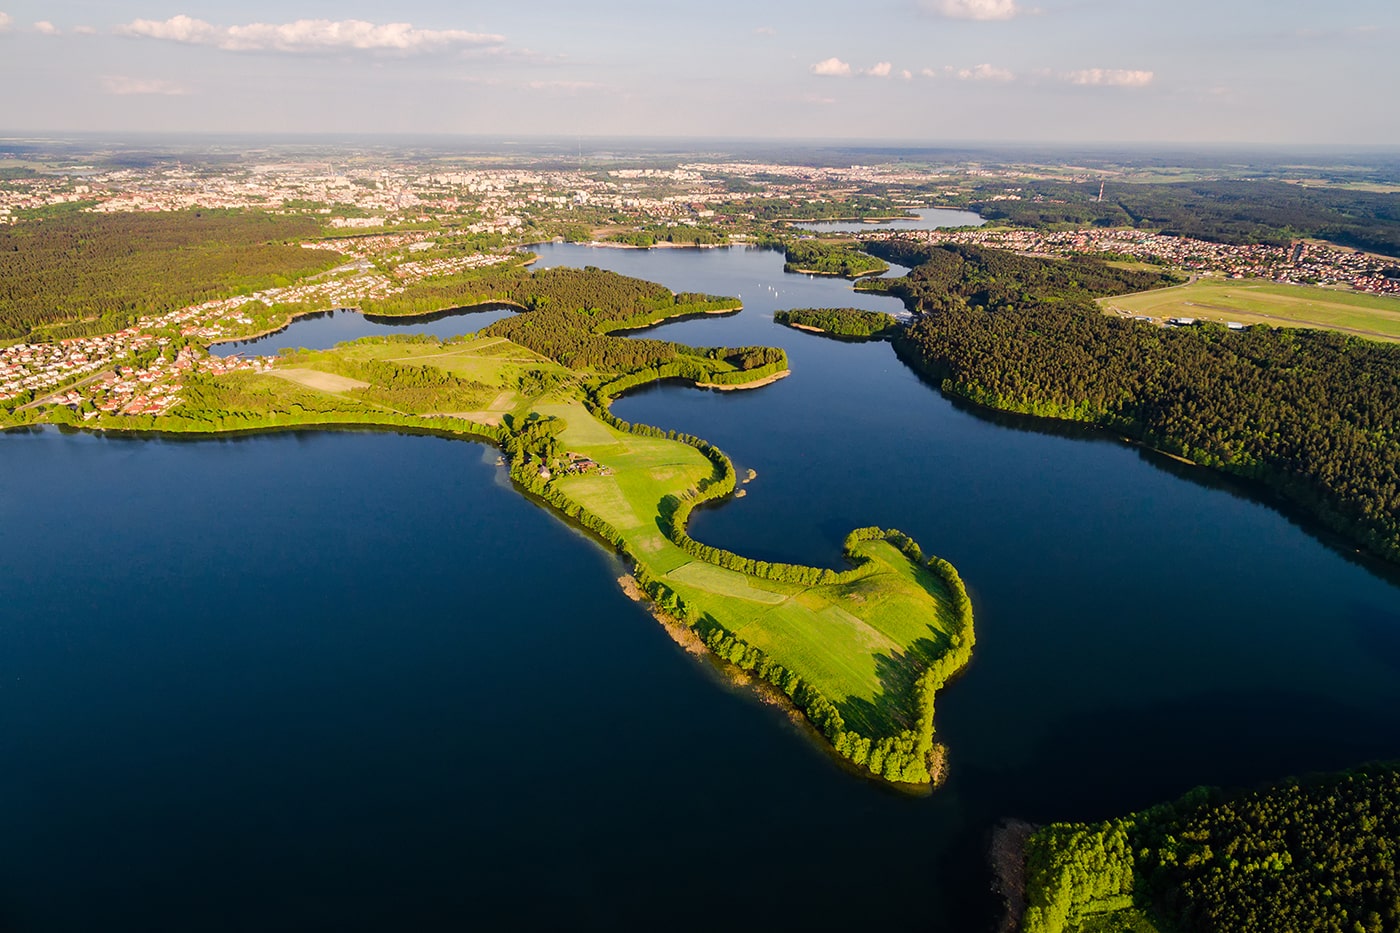 Jezioro Ukiel w Olsztynie z lotu ptaka - dron DJI Inspire RAW